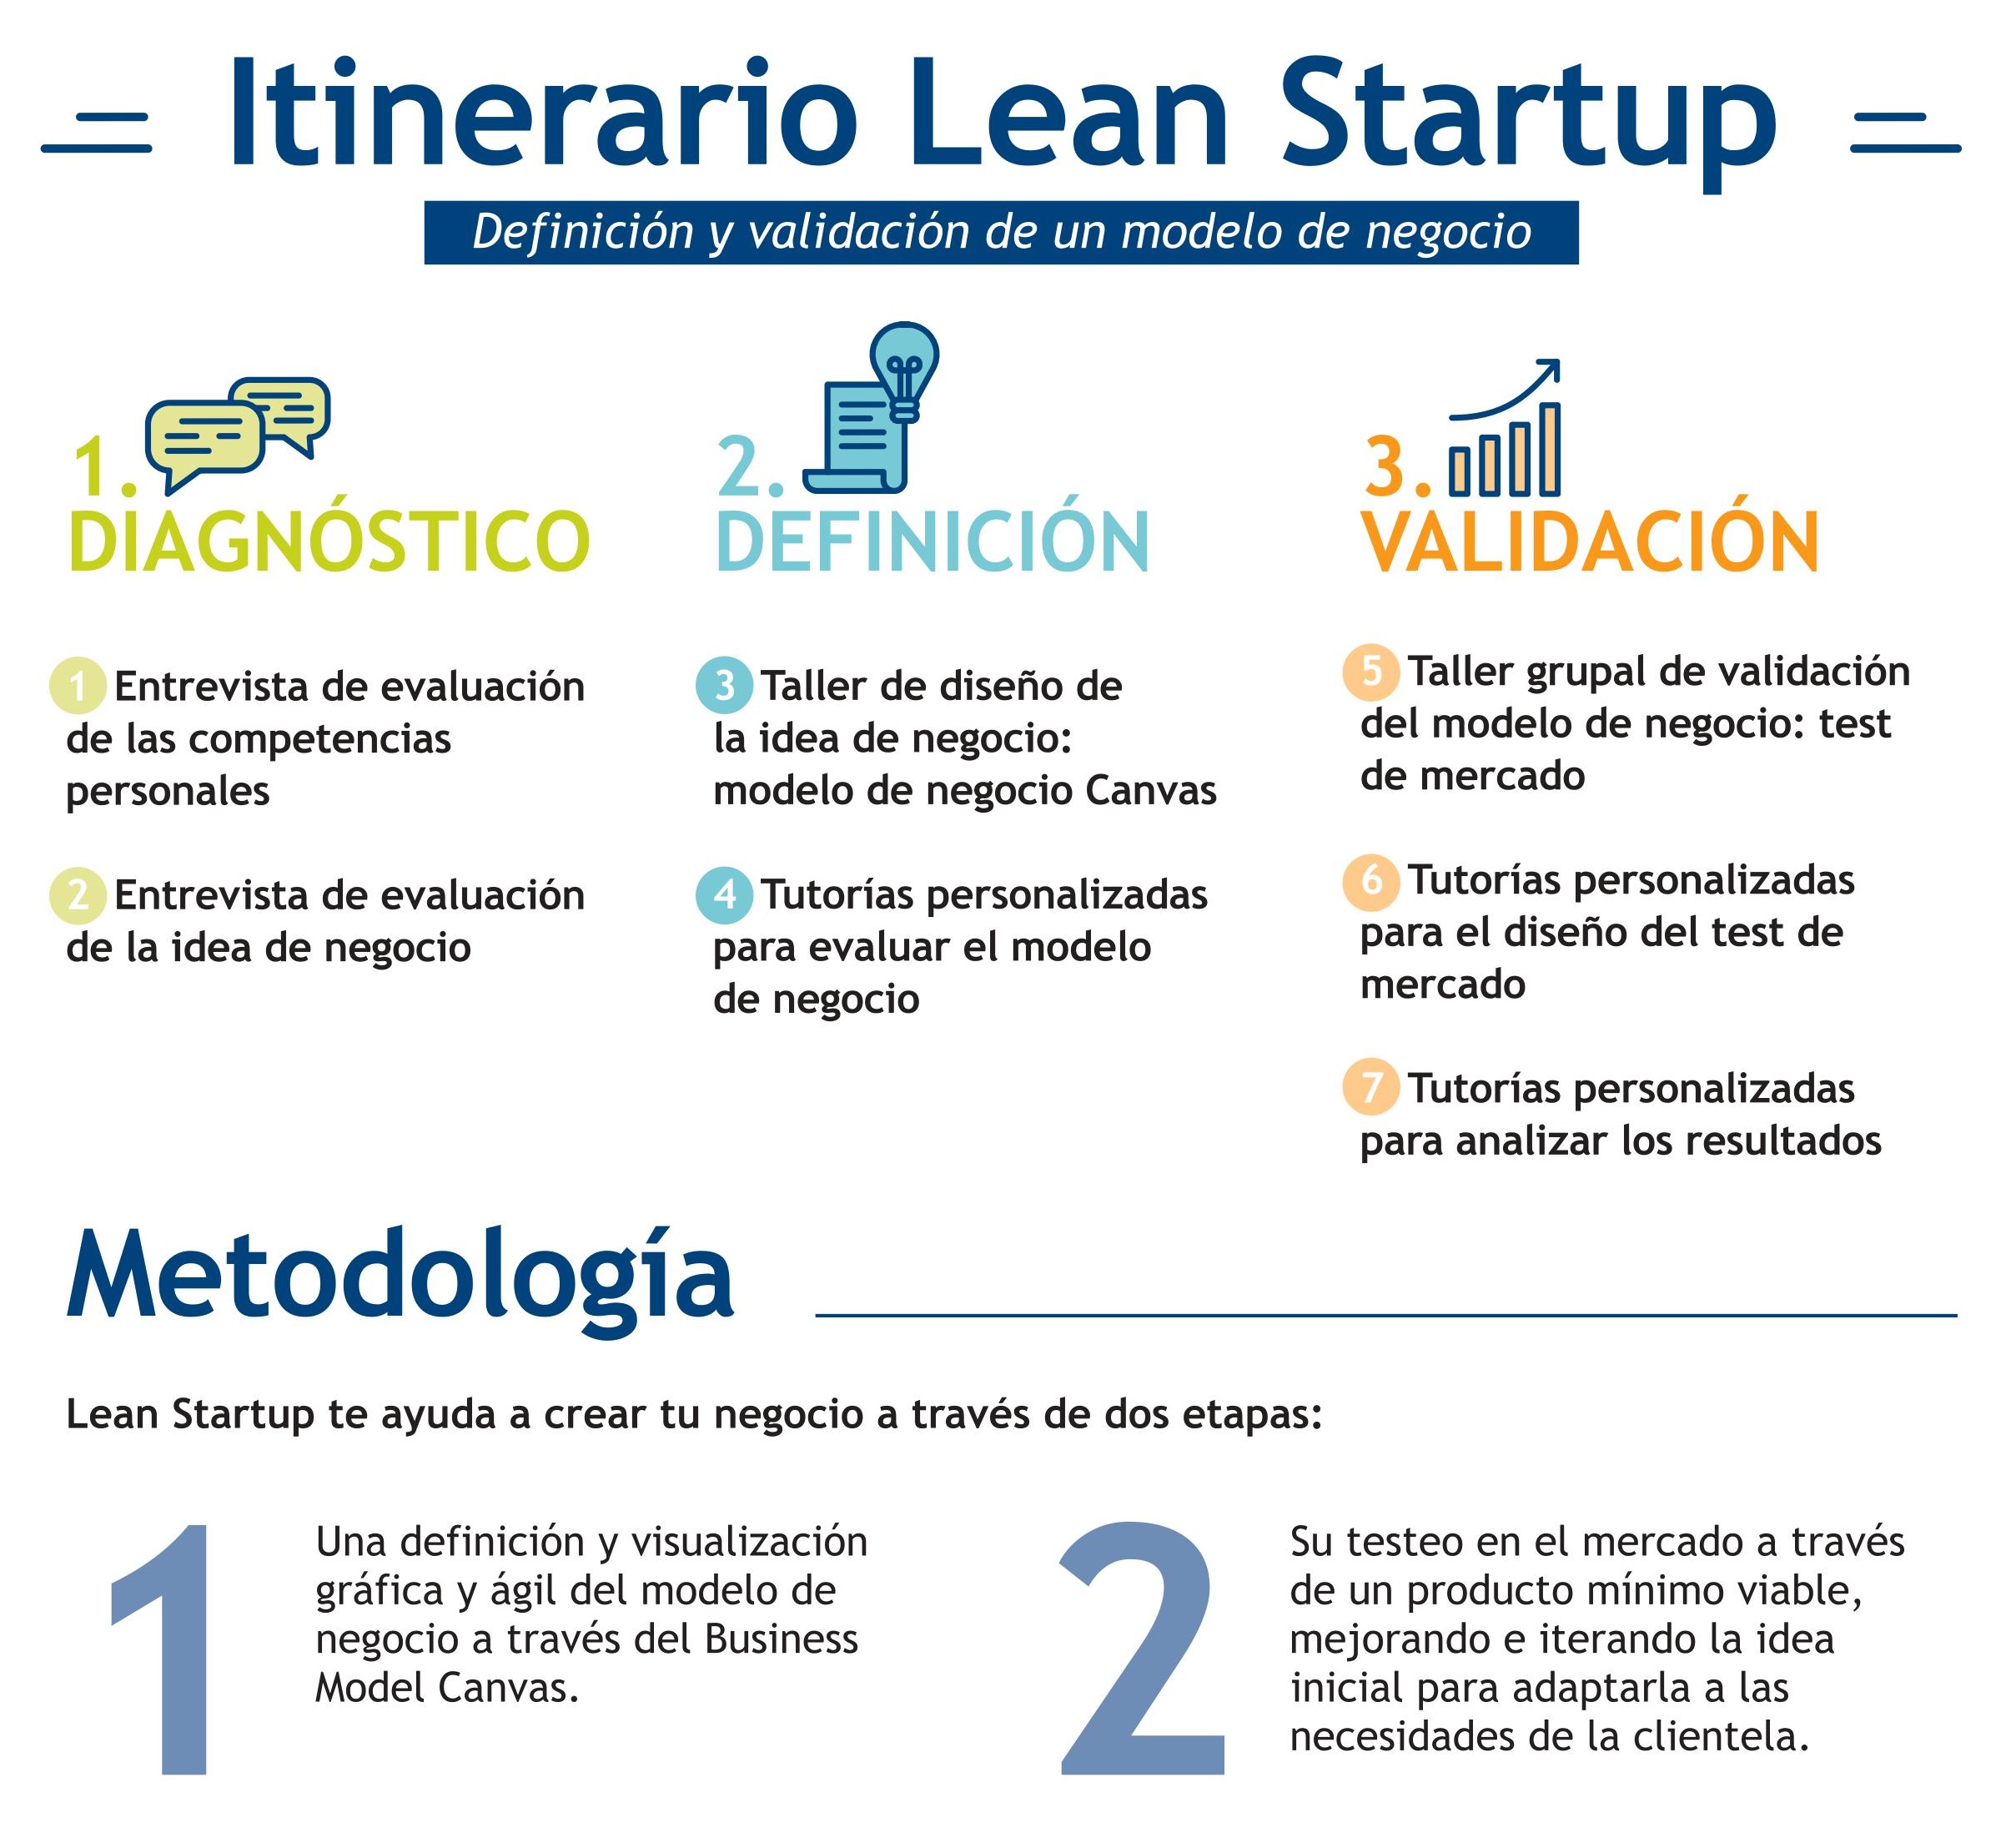 Curso Lean Startup - CID Villafranca de los Barros